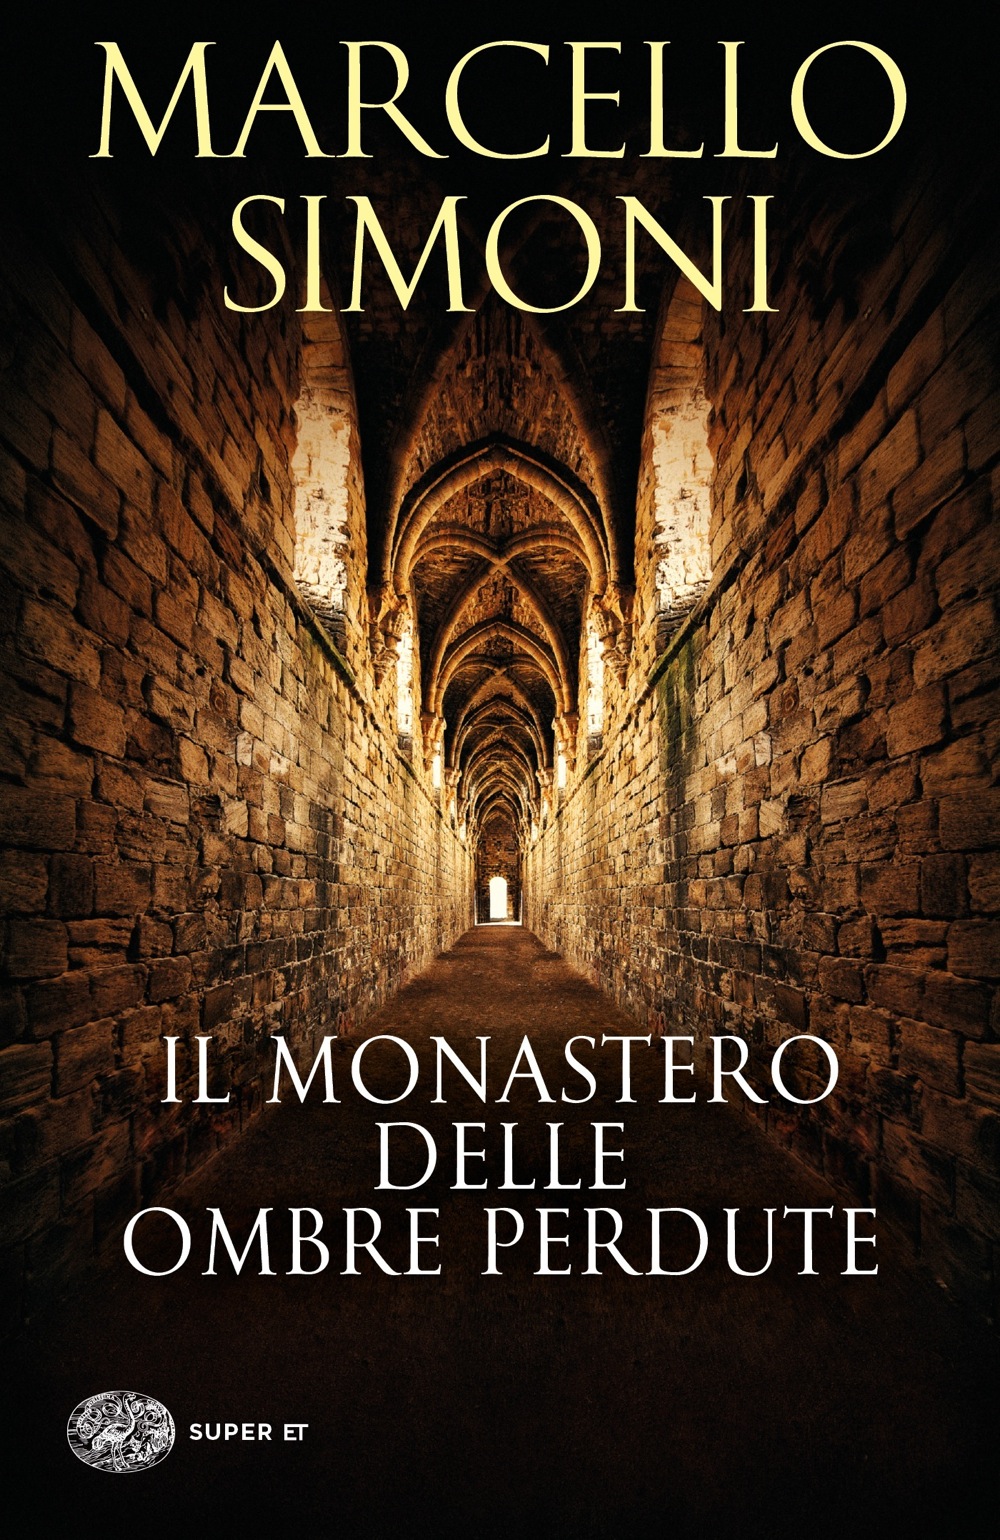 Il monastero delle ombre perdute, Marcello Simoni. Giulio Einaudi editore -  Super ET